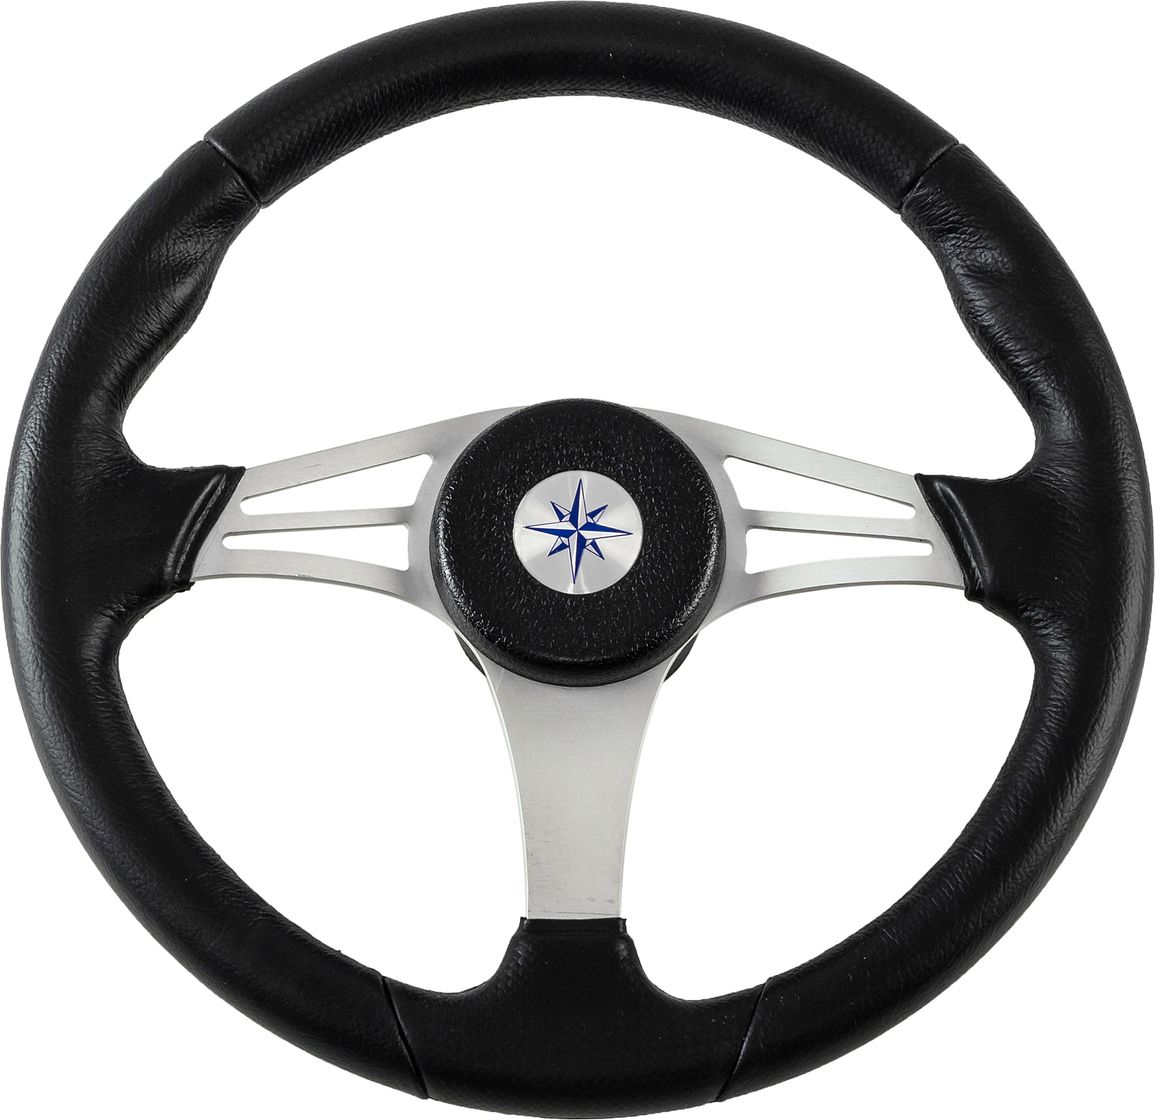 Рулевое колесо ENDURANCE обод черный, спицы серебряные д. 350 мм VN13511-01 рулевое колесо skipper обод черносеребристый спицы серебряные д 350 мм vn835001 93